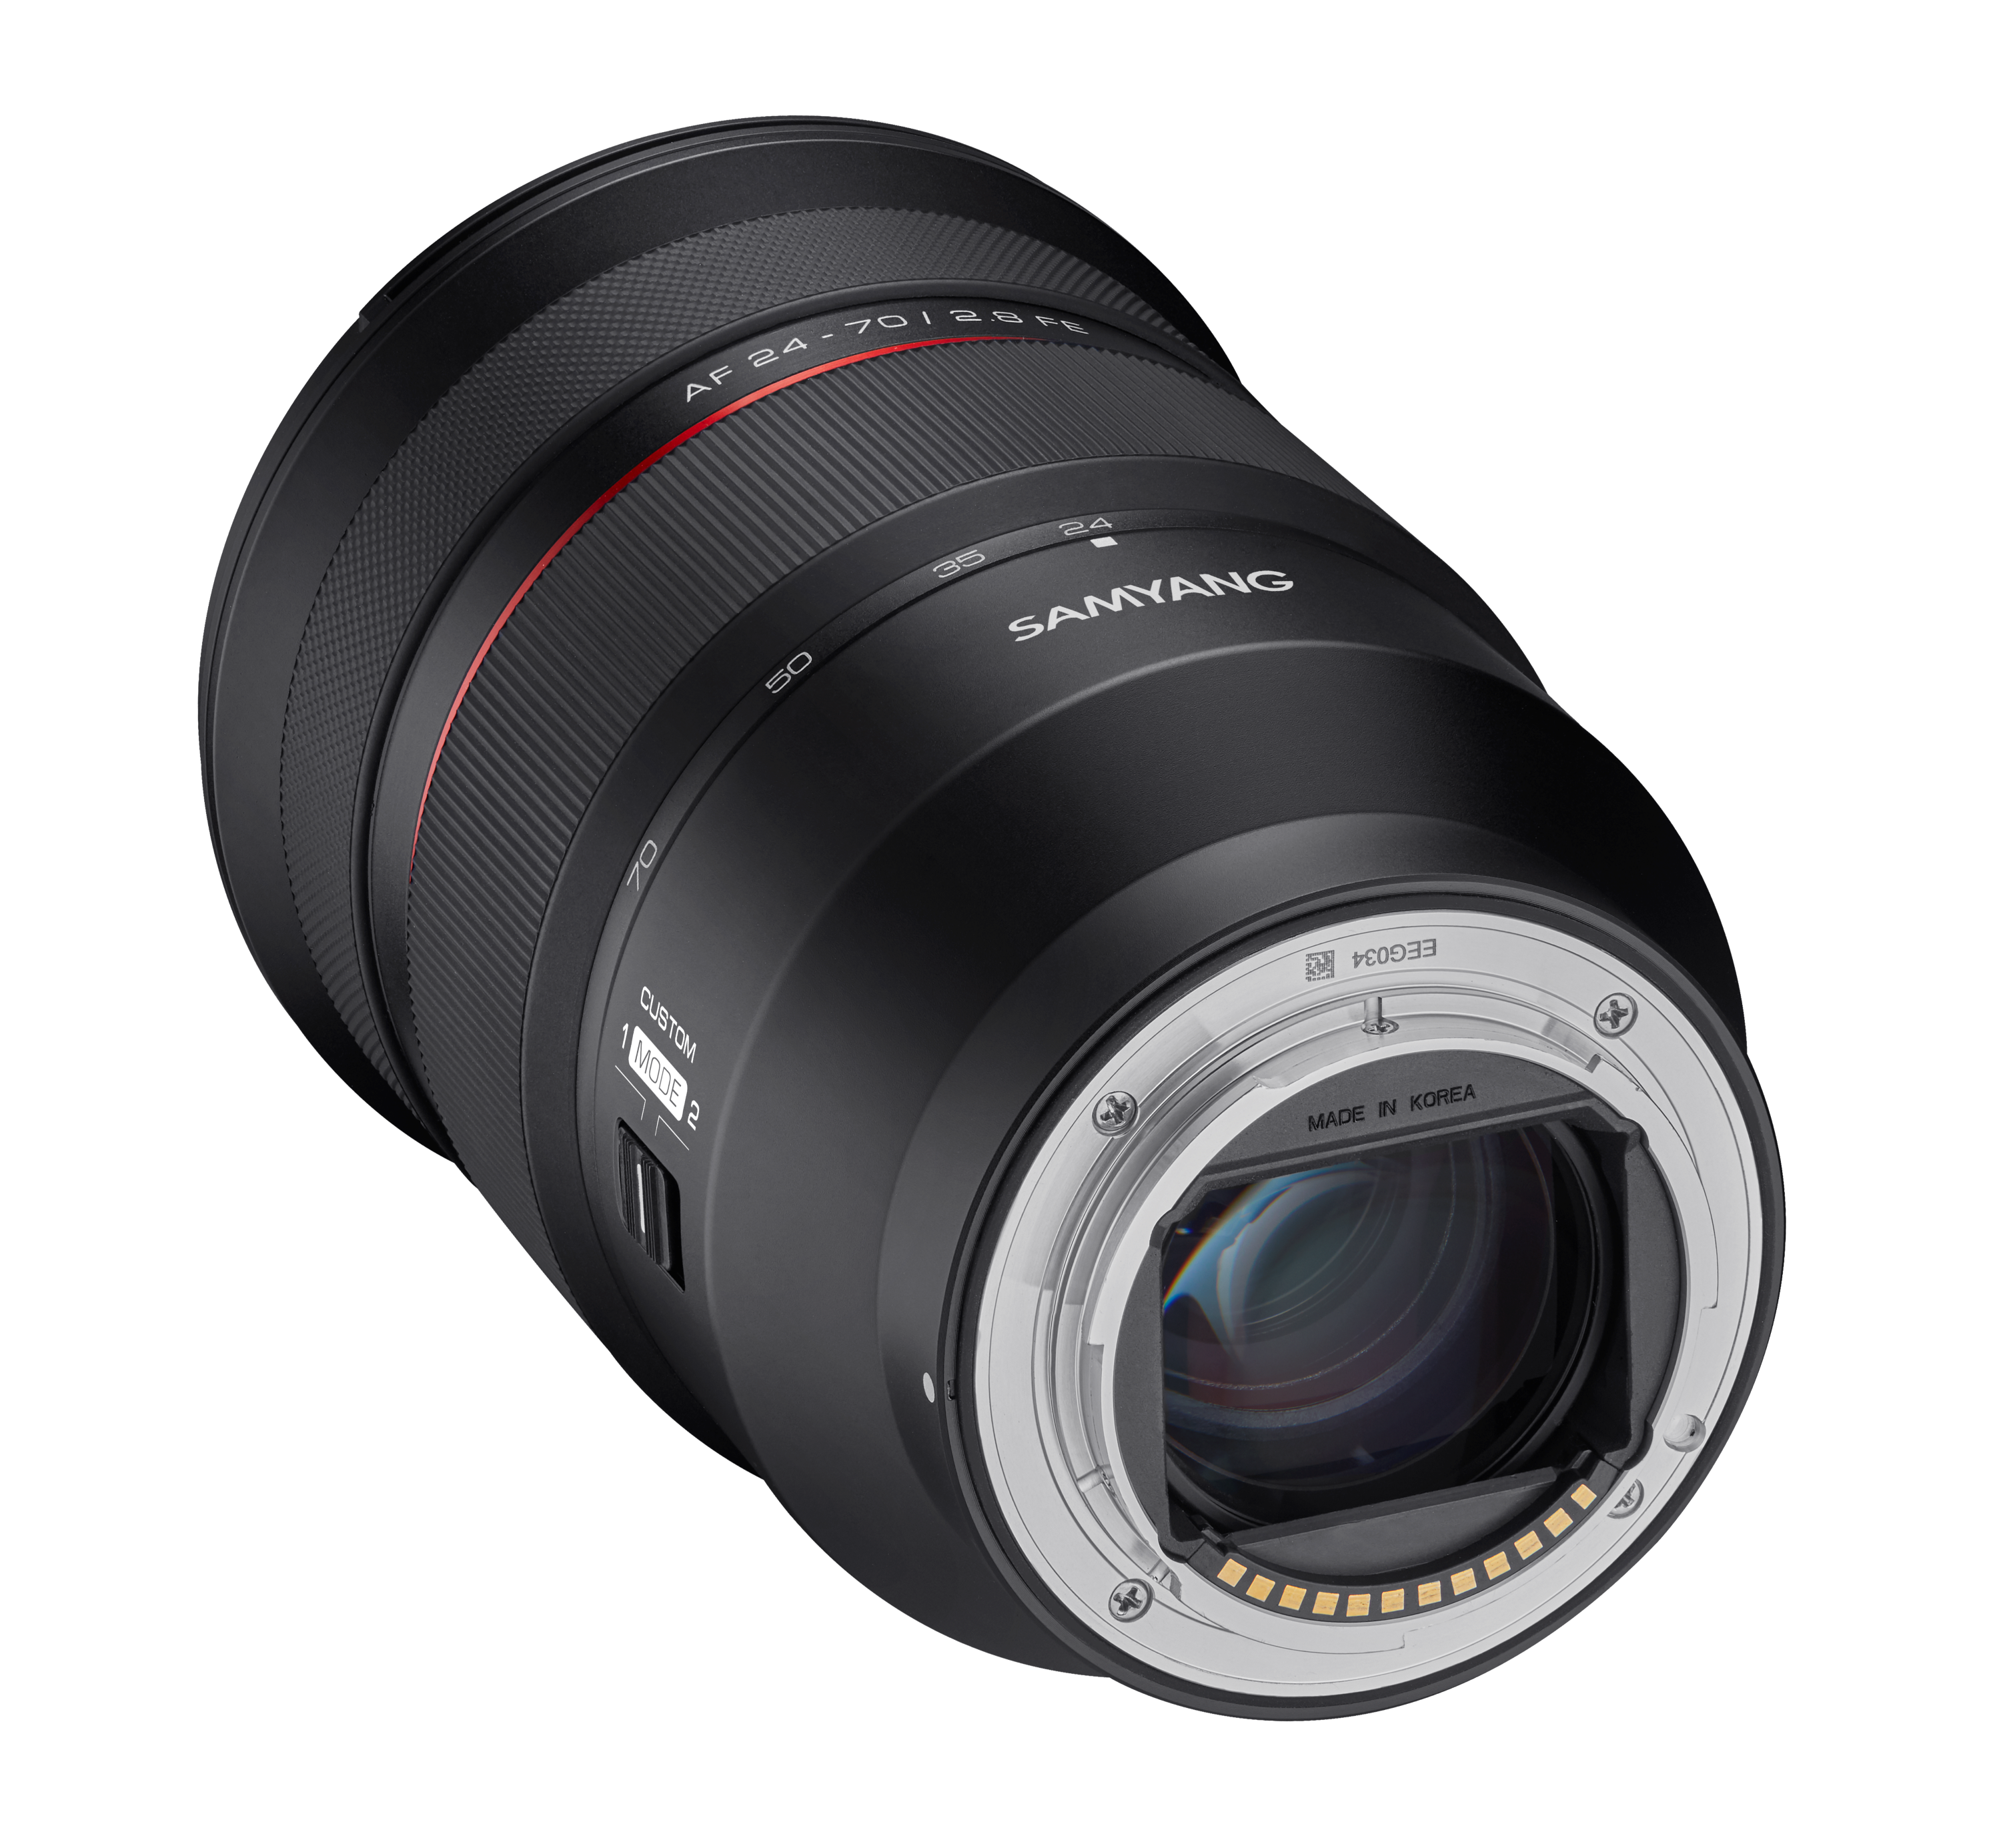 24-70mm F2.8 AF Full Frame Zoom Lens (Sony E) – Samyang US